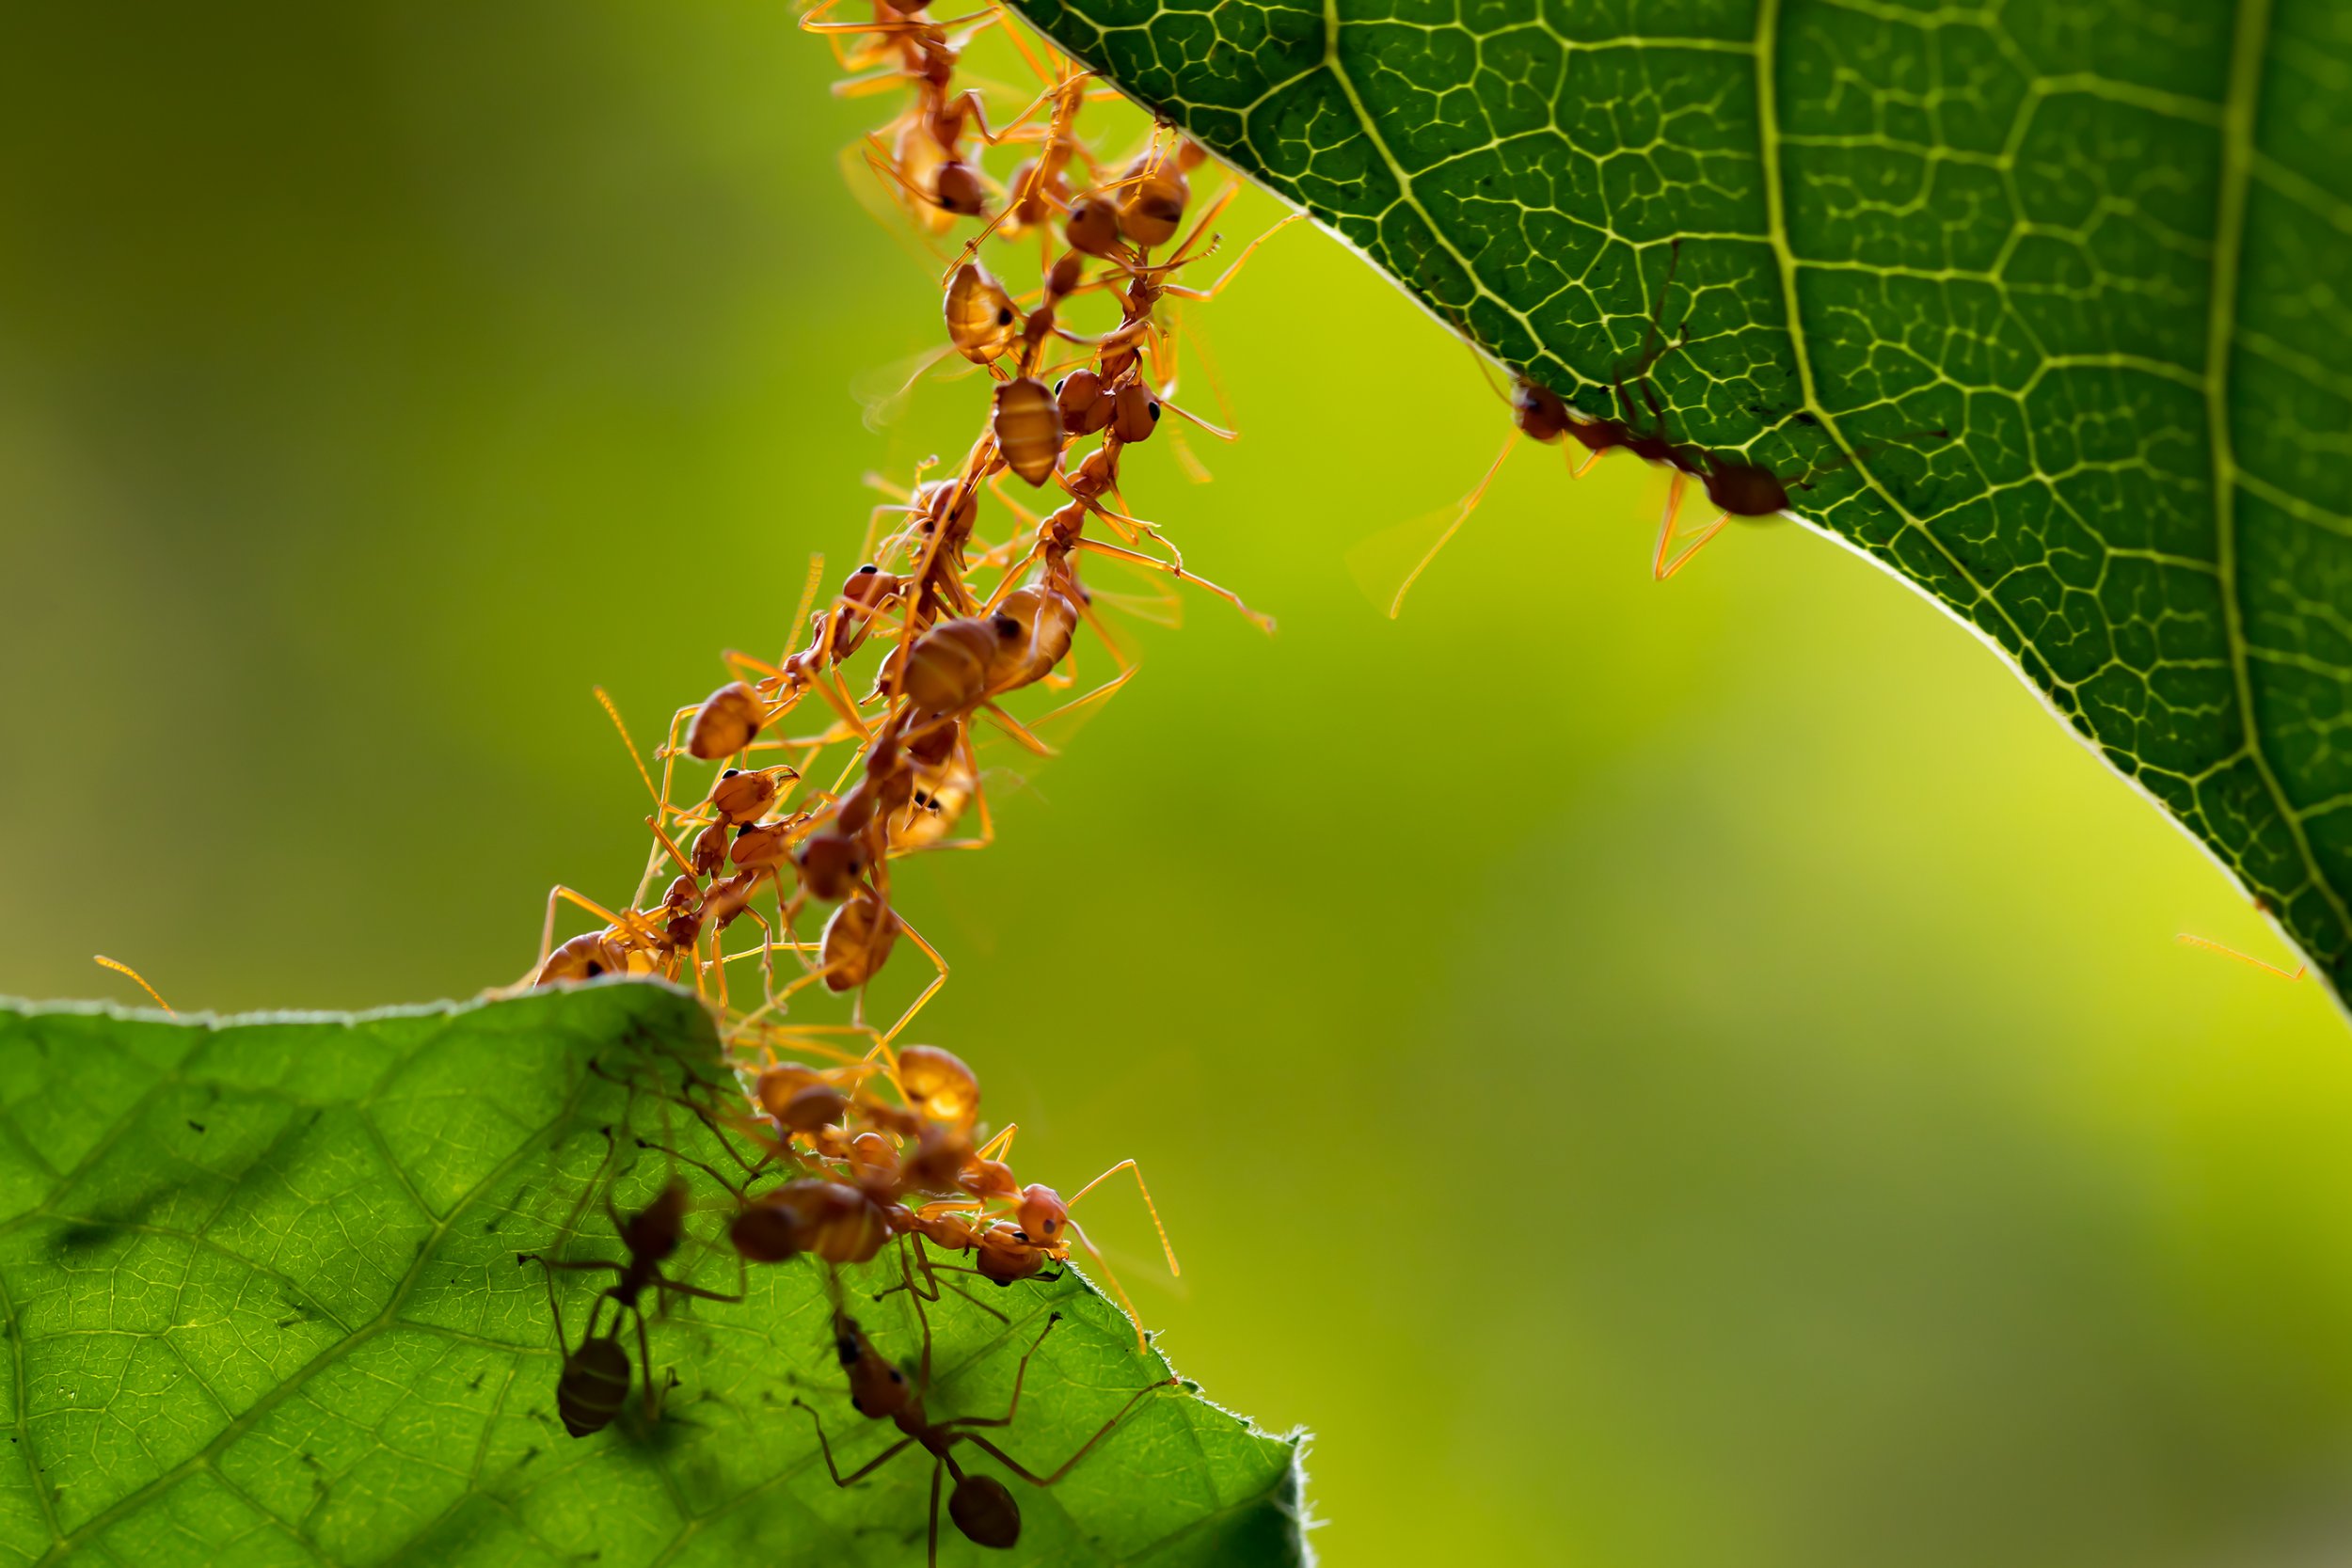 ant-colony